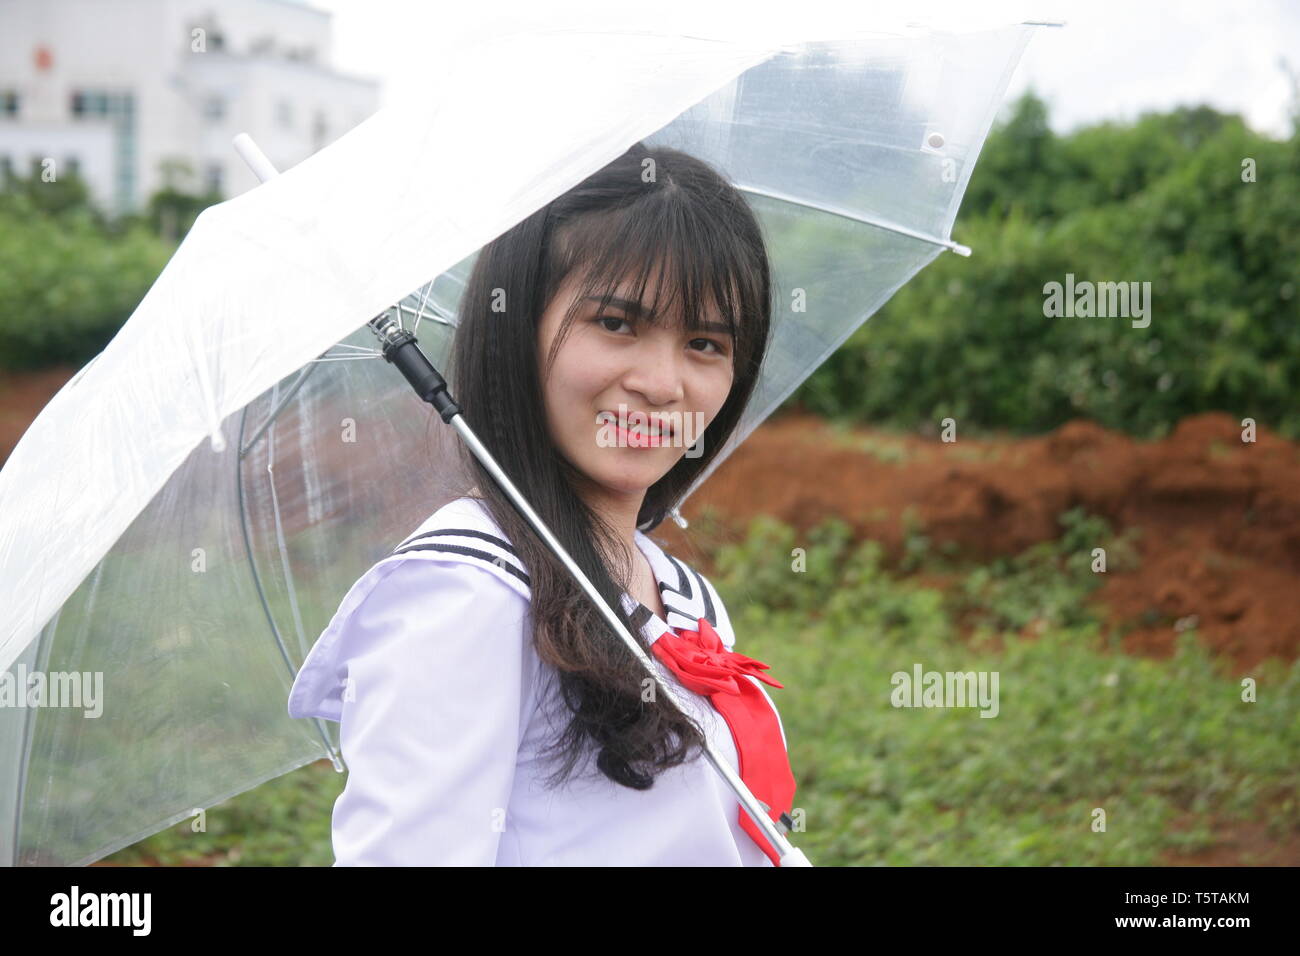 photo of a girl using a sun umbrella Stock Photo